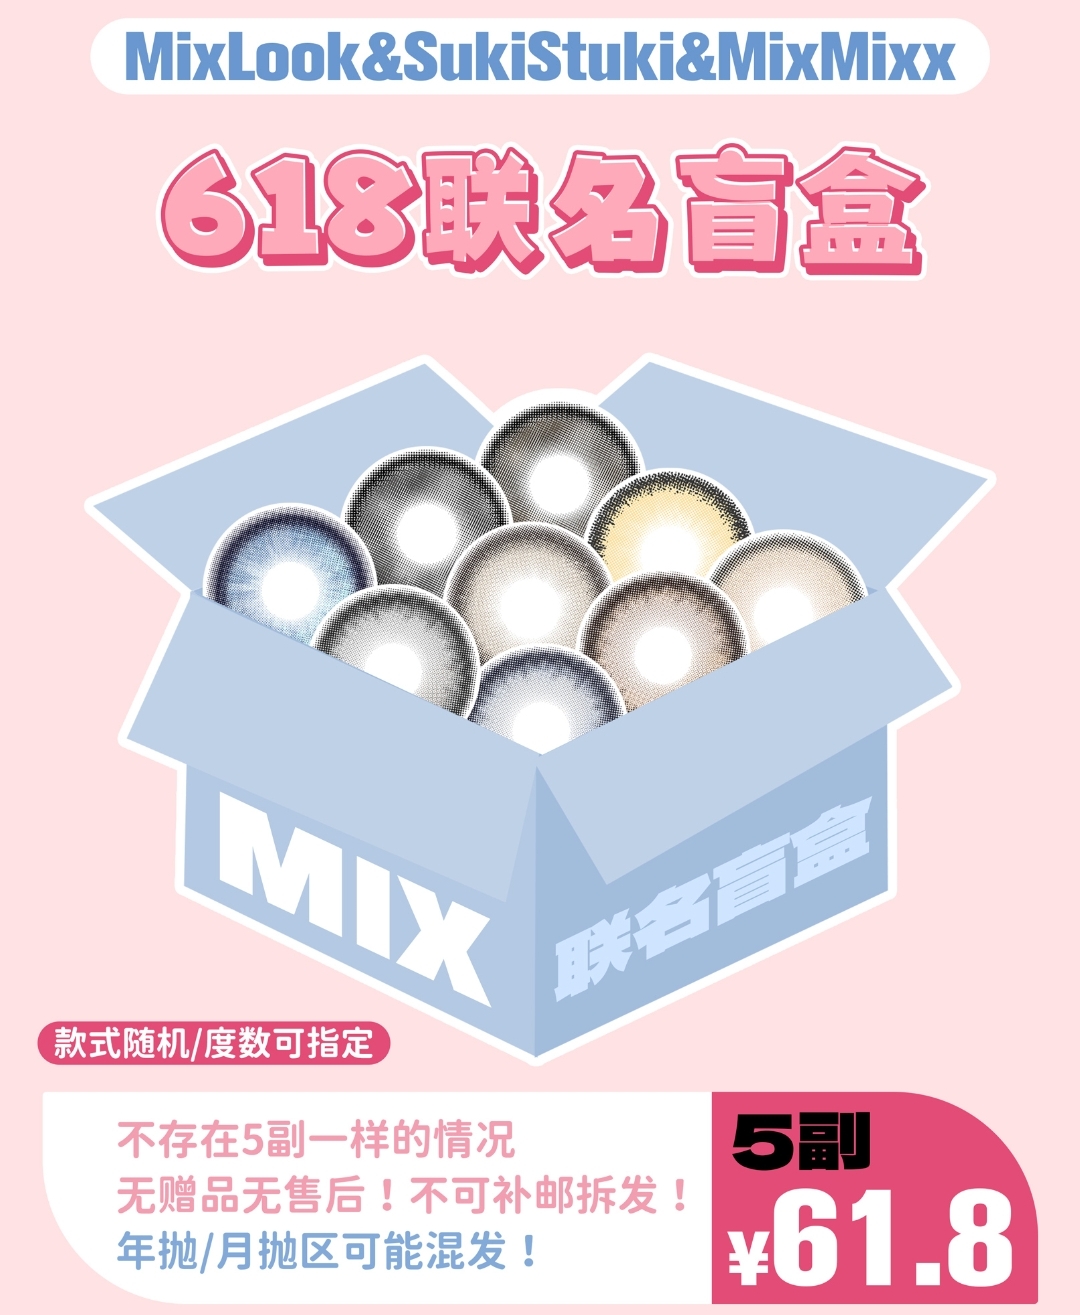 【秒杀】MIXLOOK·SukiStuki·mixmixx 618联名盲盒发售